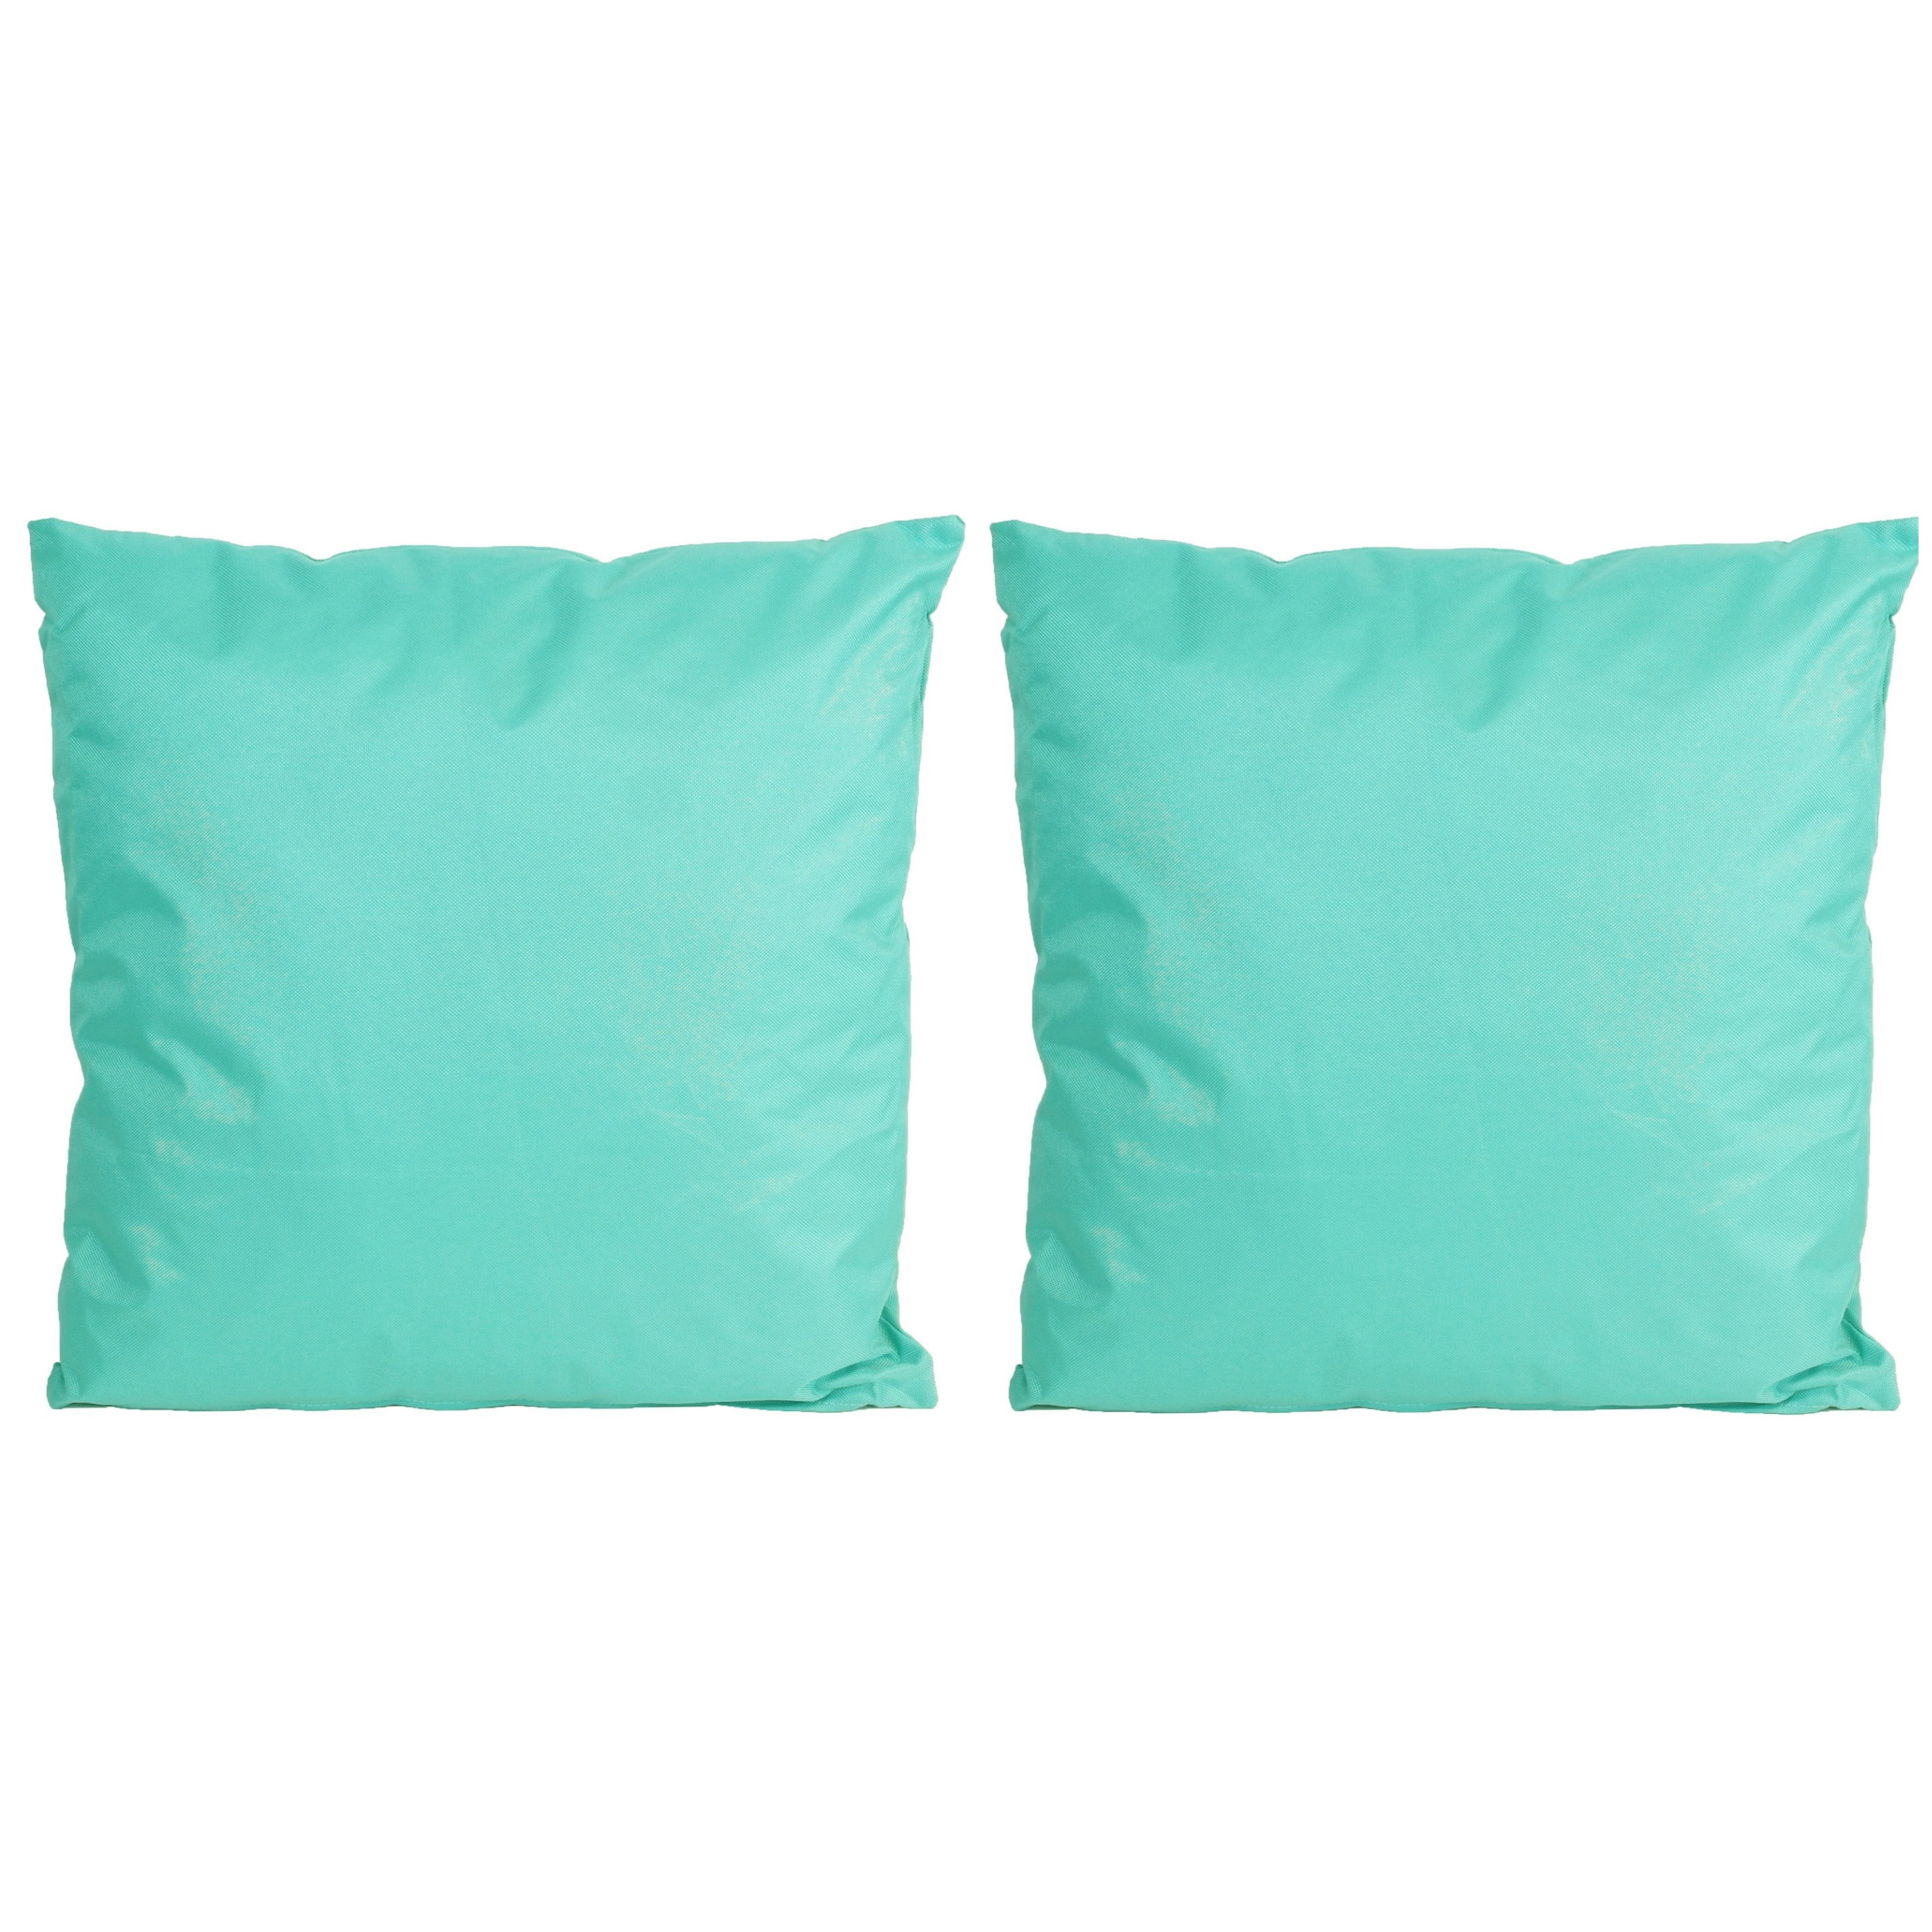 6x Bank-sier kussens voor binnen en buiten in de kleur aqua blauw 45 x 45 cm